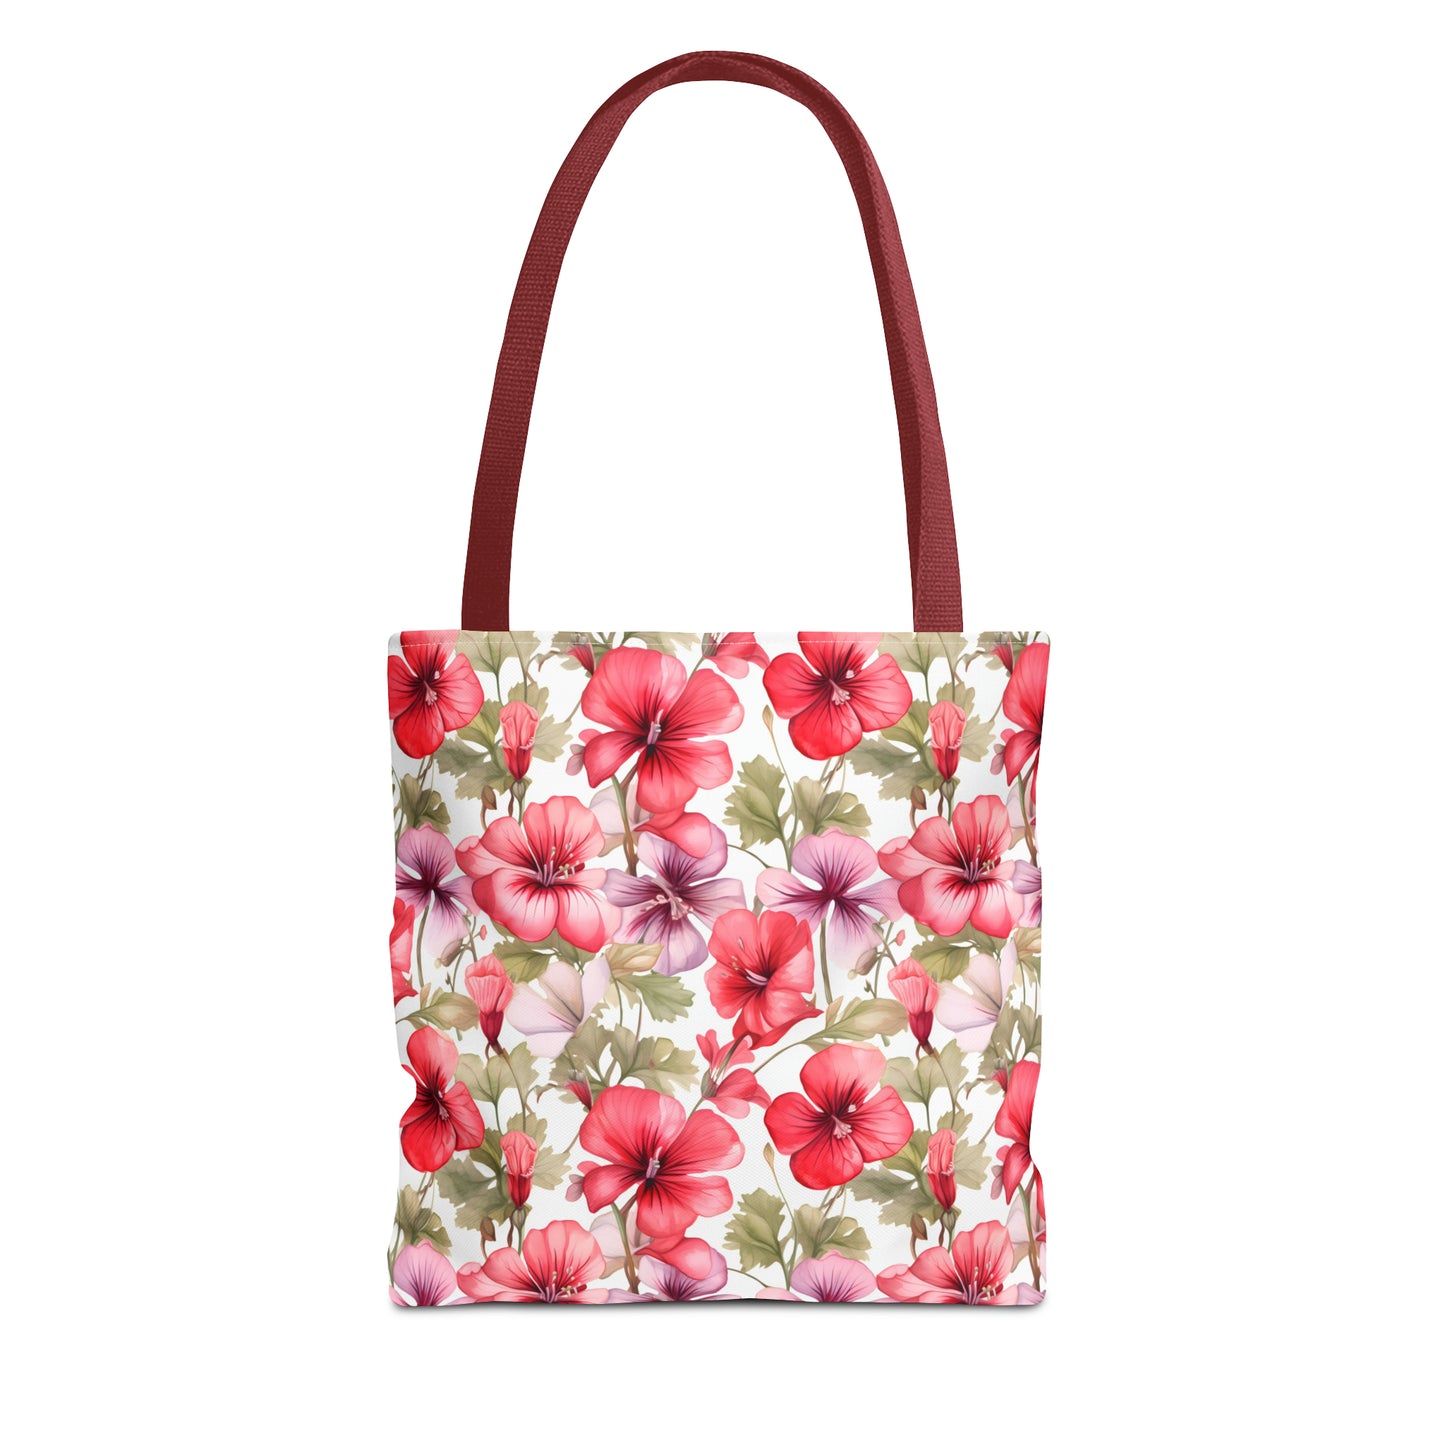 Pastel Blooms Pansy Tote Bag (13" x 13")